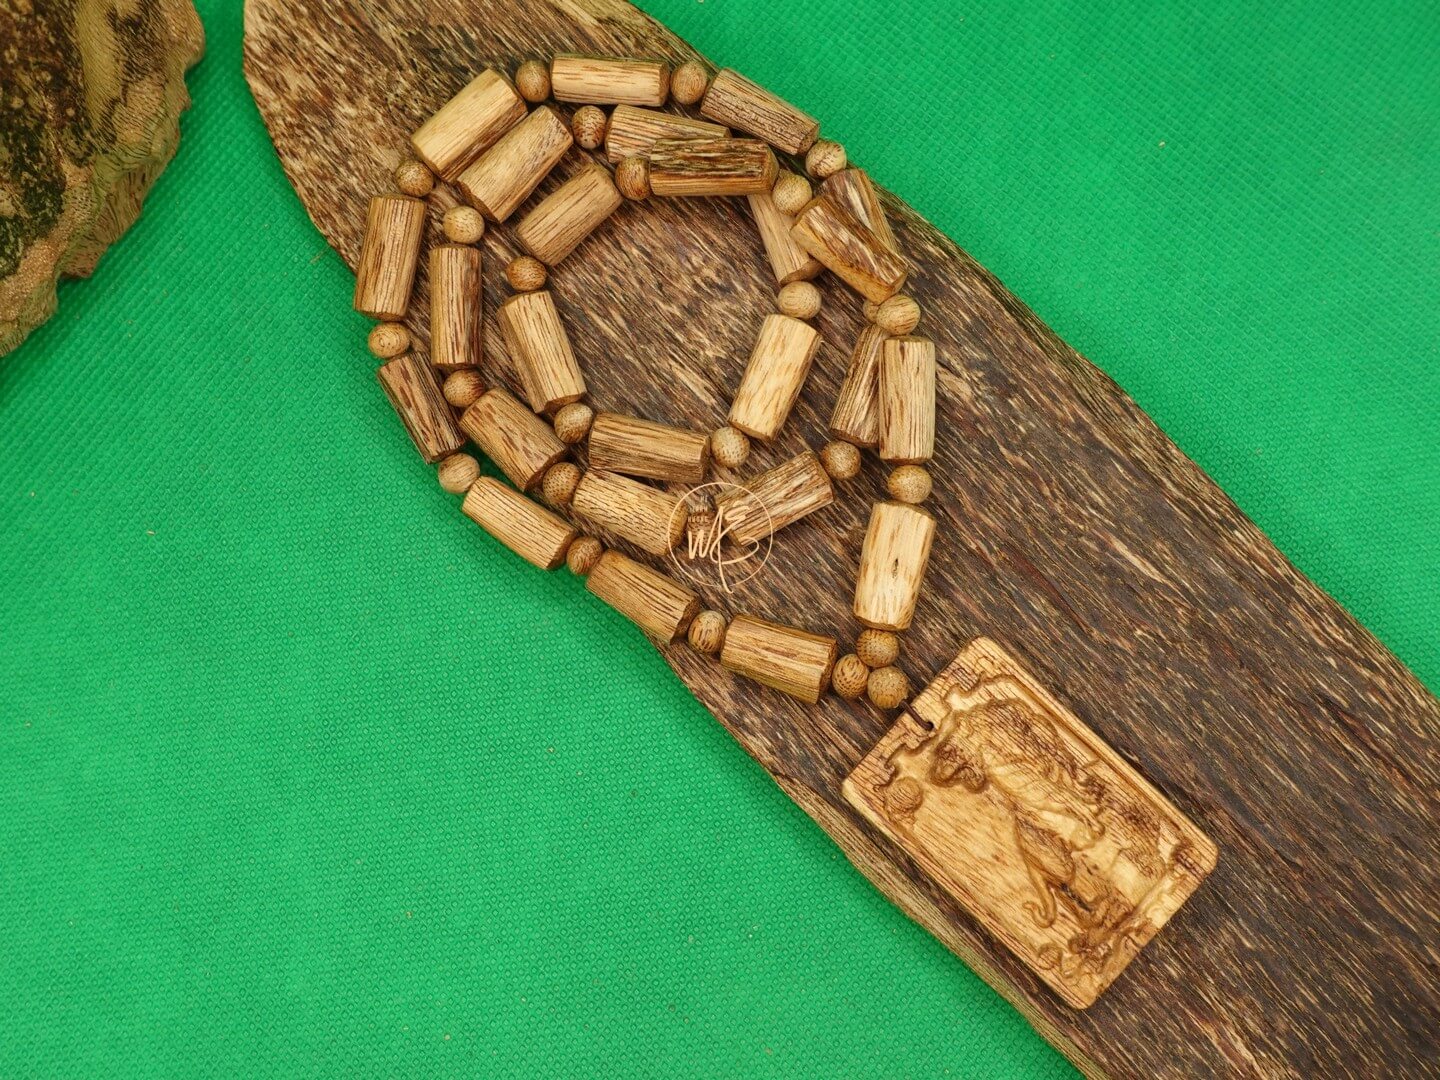 Chuỗi trúc đeo cổ dạng thô kèm mặt dây chuyền trầm hương tự nhiên